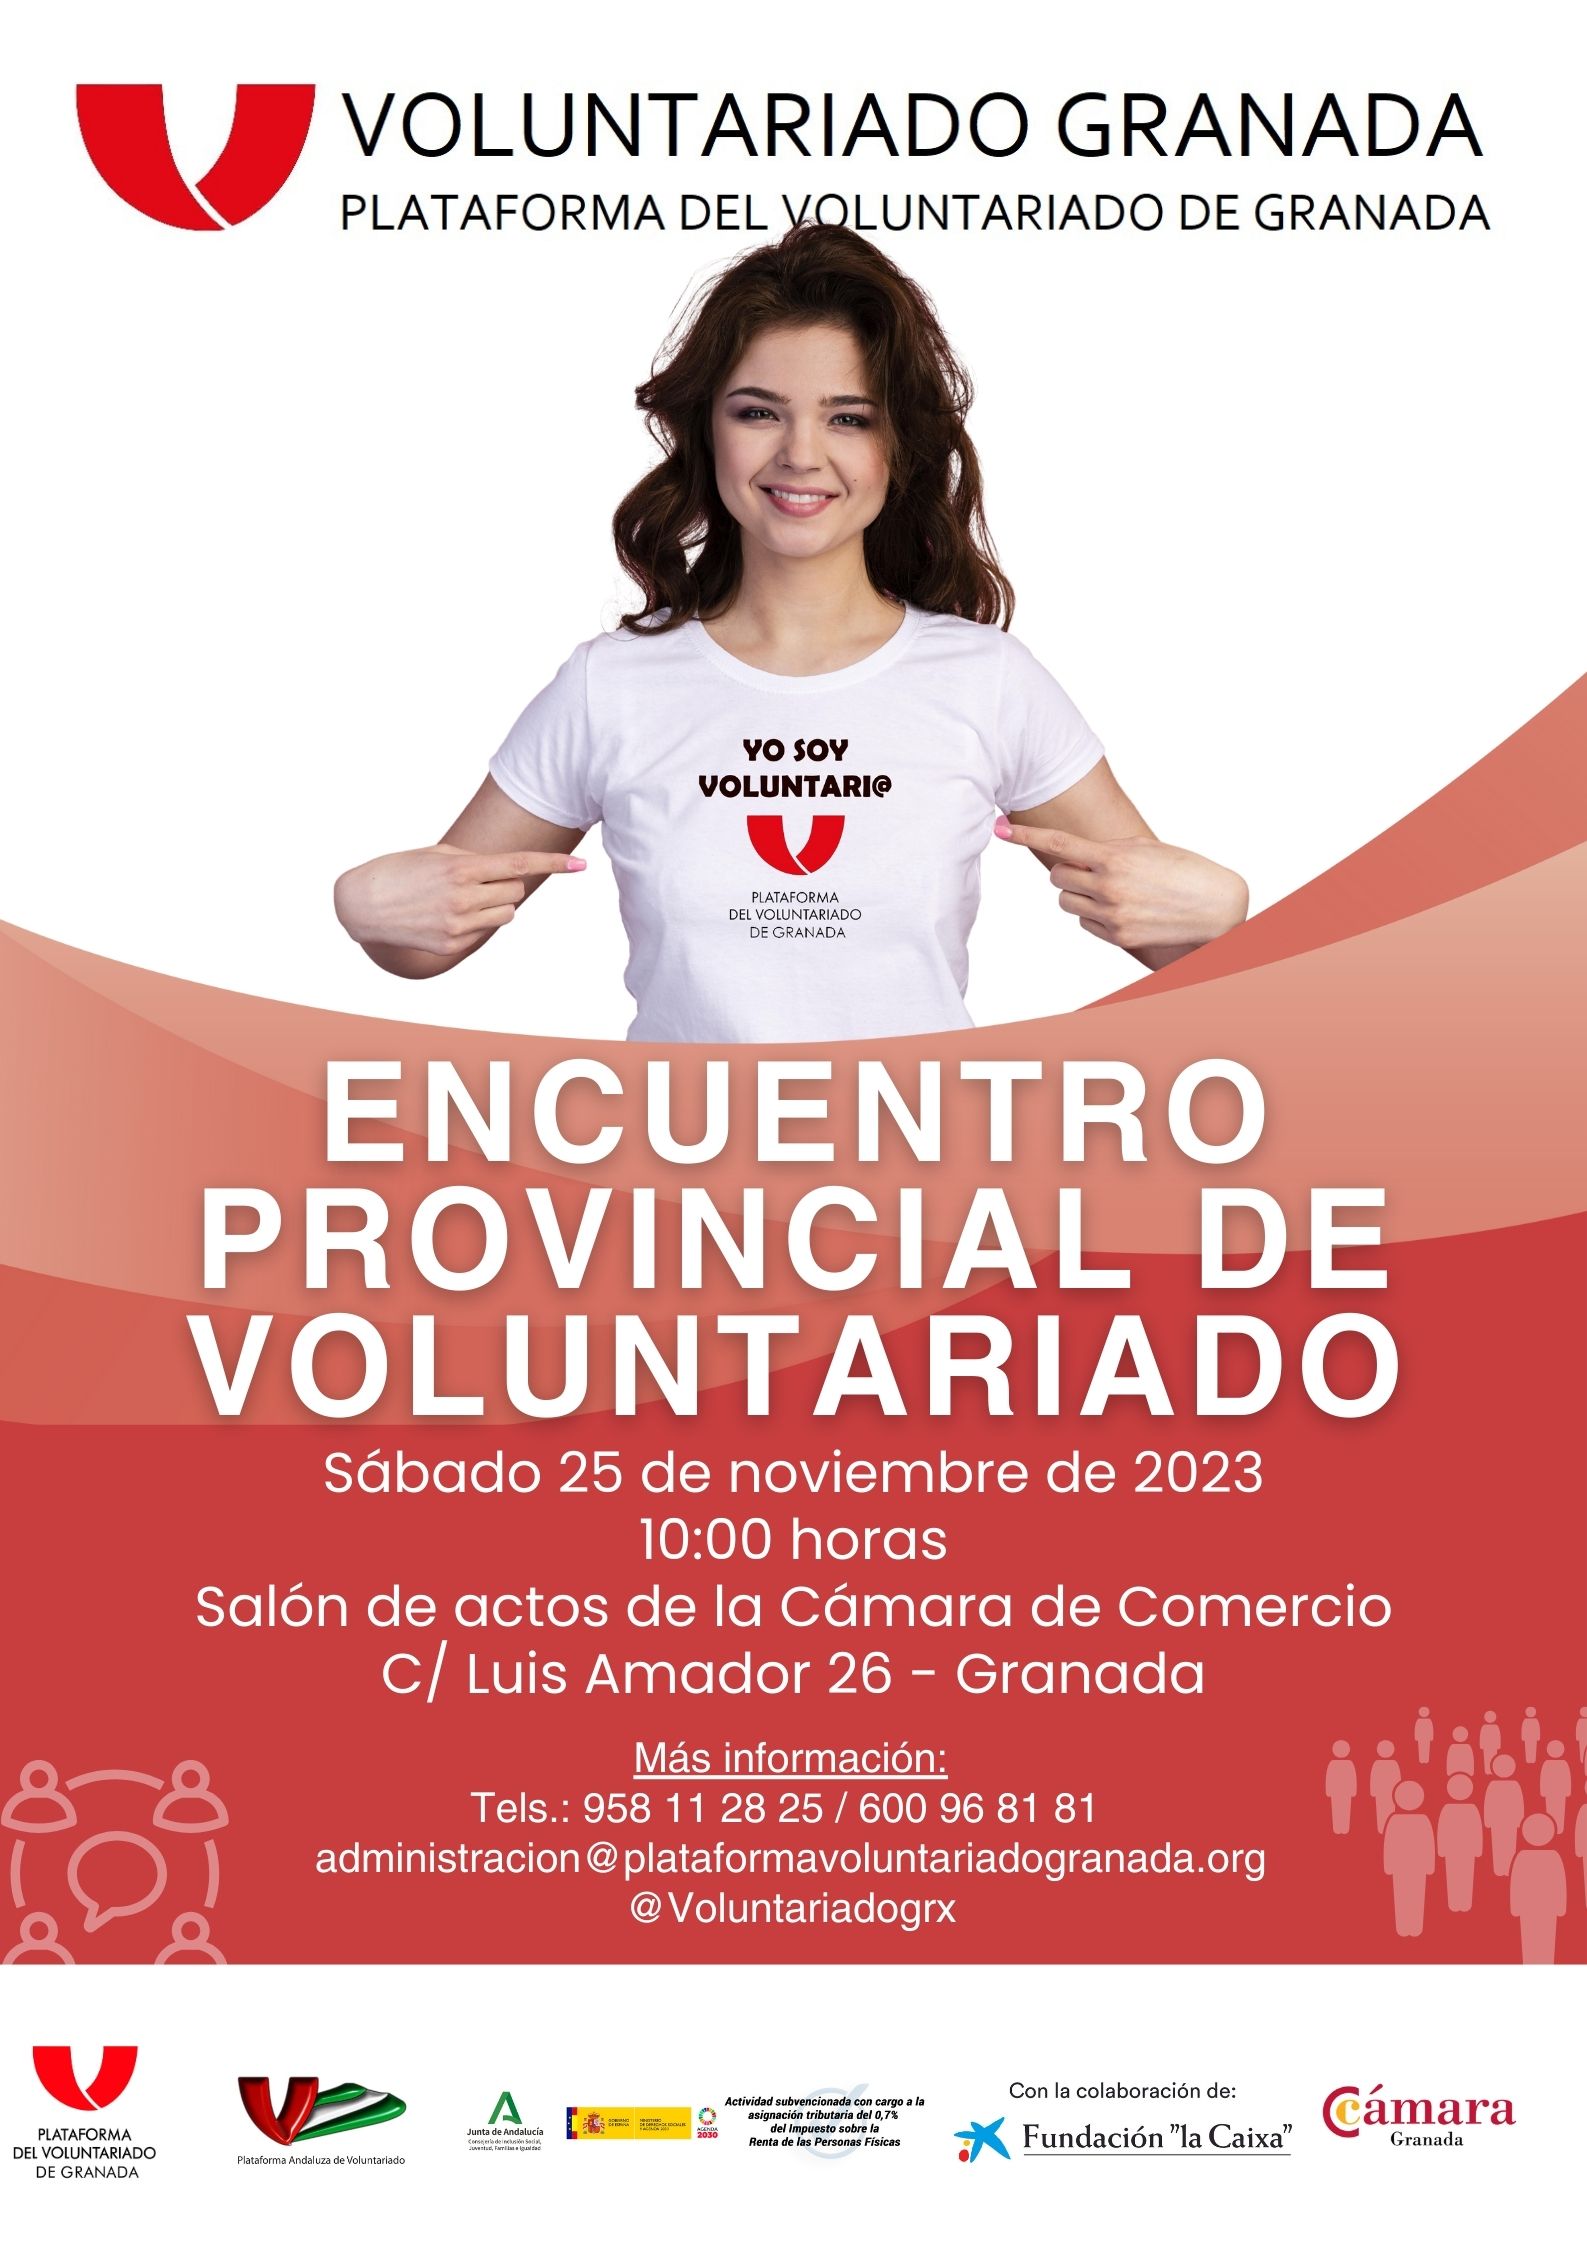 El Encuentro Provincial de Voluntariado 2023 tendr lugar este sbado en Granada
